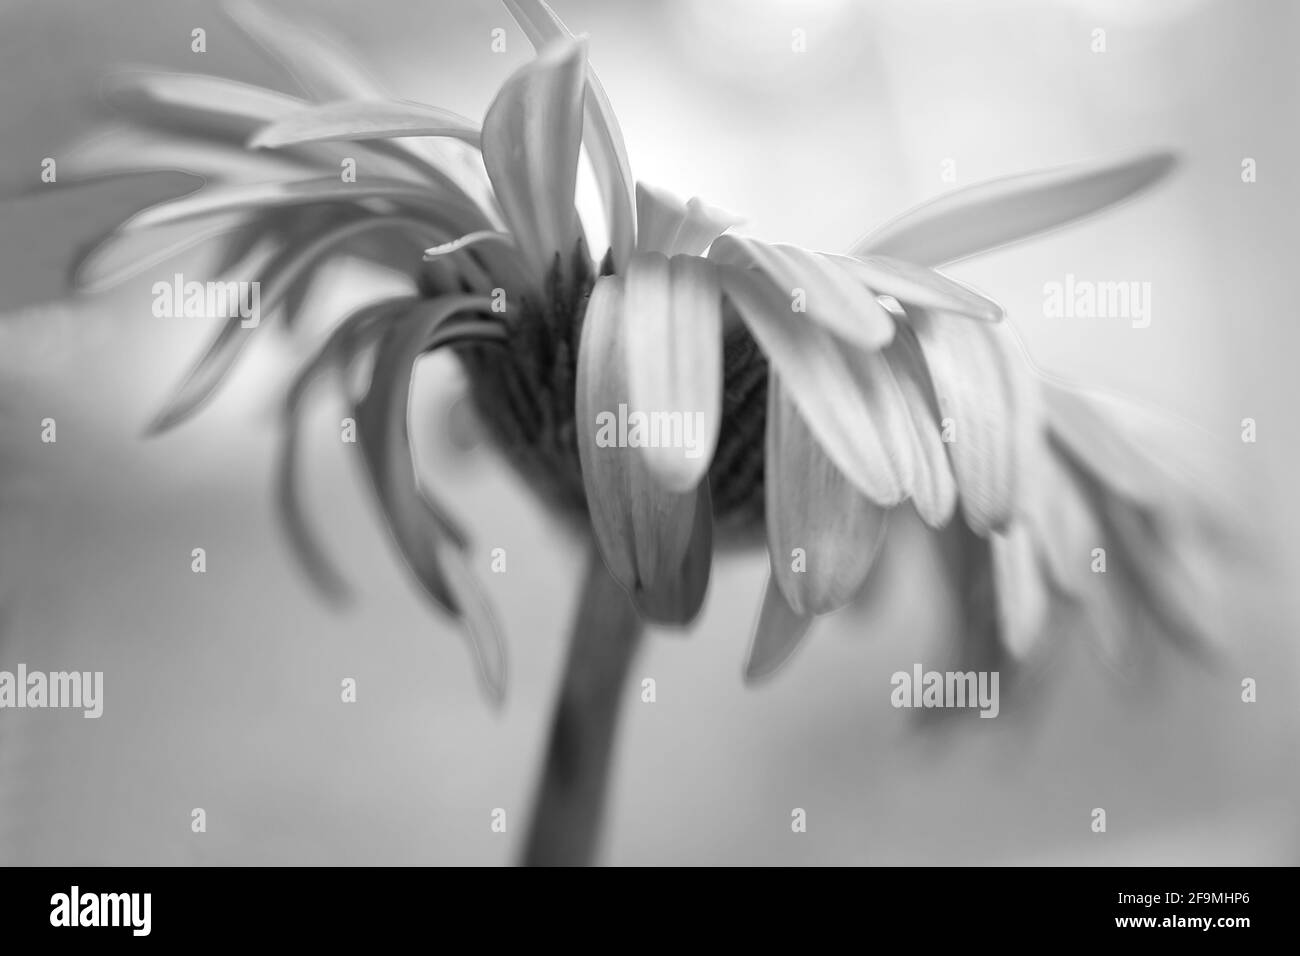 WA19490-00...WASHINGTON - les pétales colorés d'un Gerbera en pleine floraison vu en noir et blanc. Image photographiée avec un Lensbaby Velvet 85. Banque D'Images